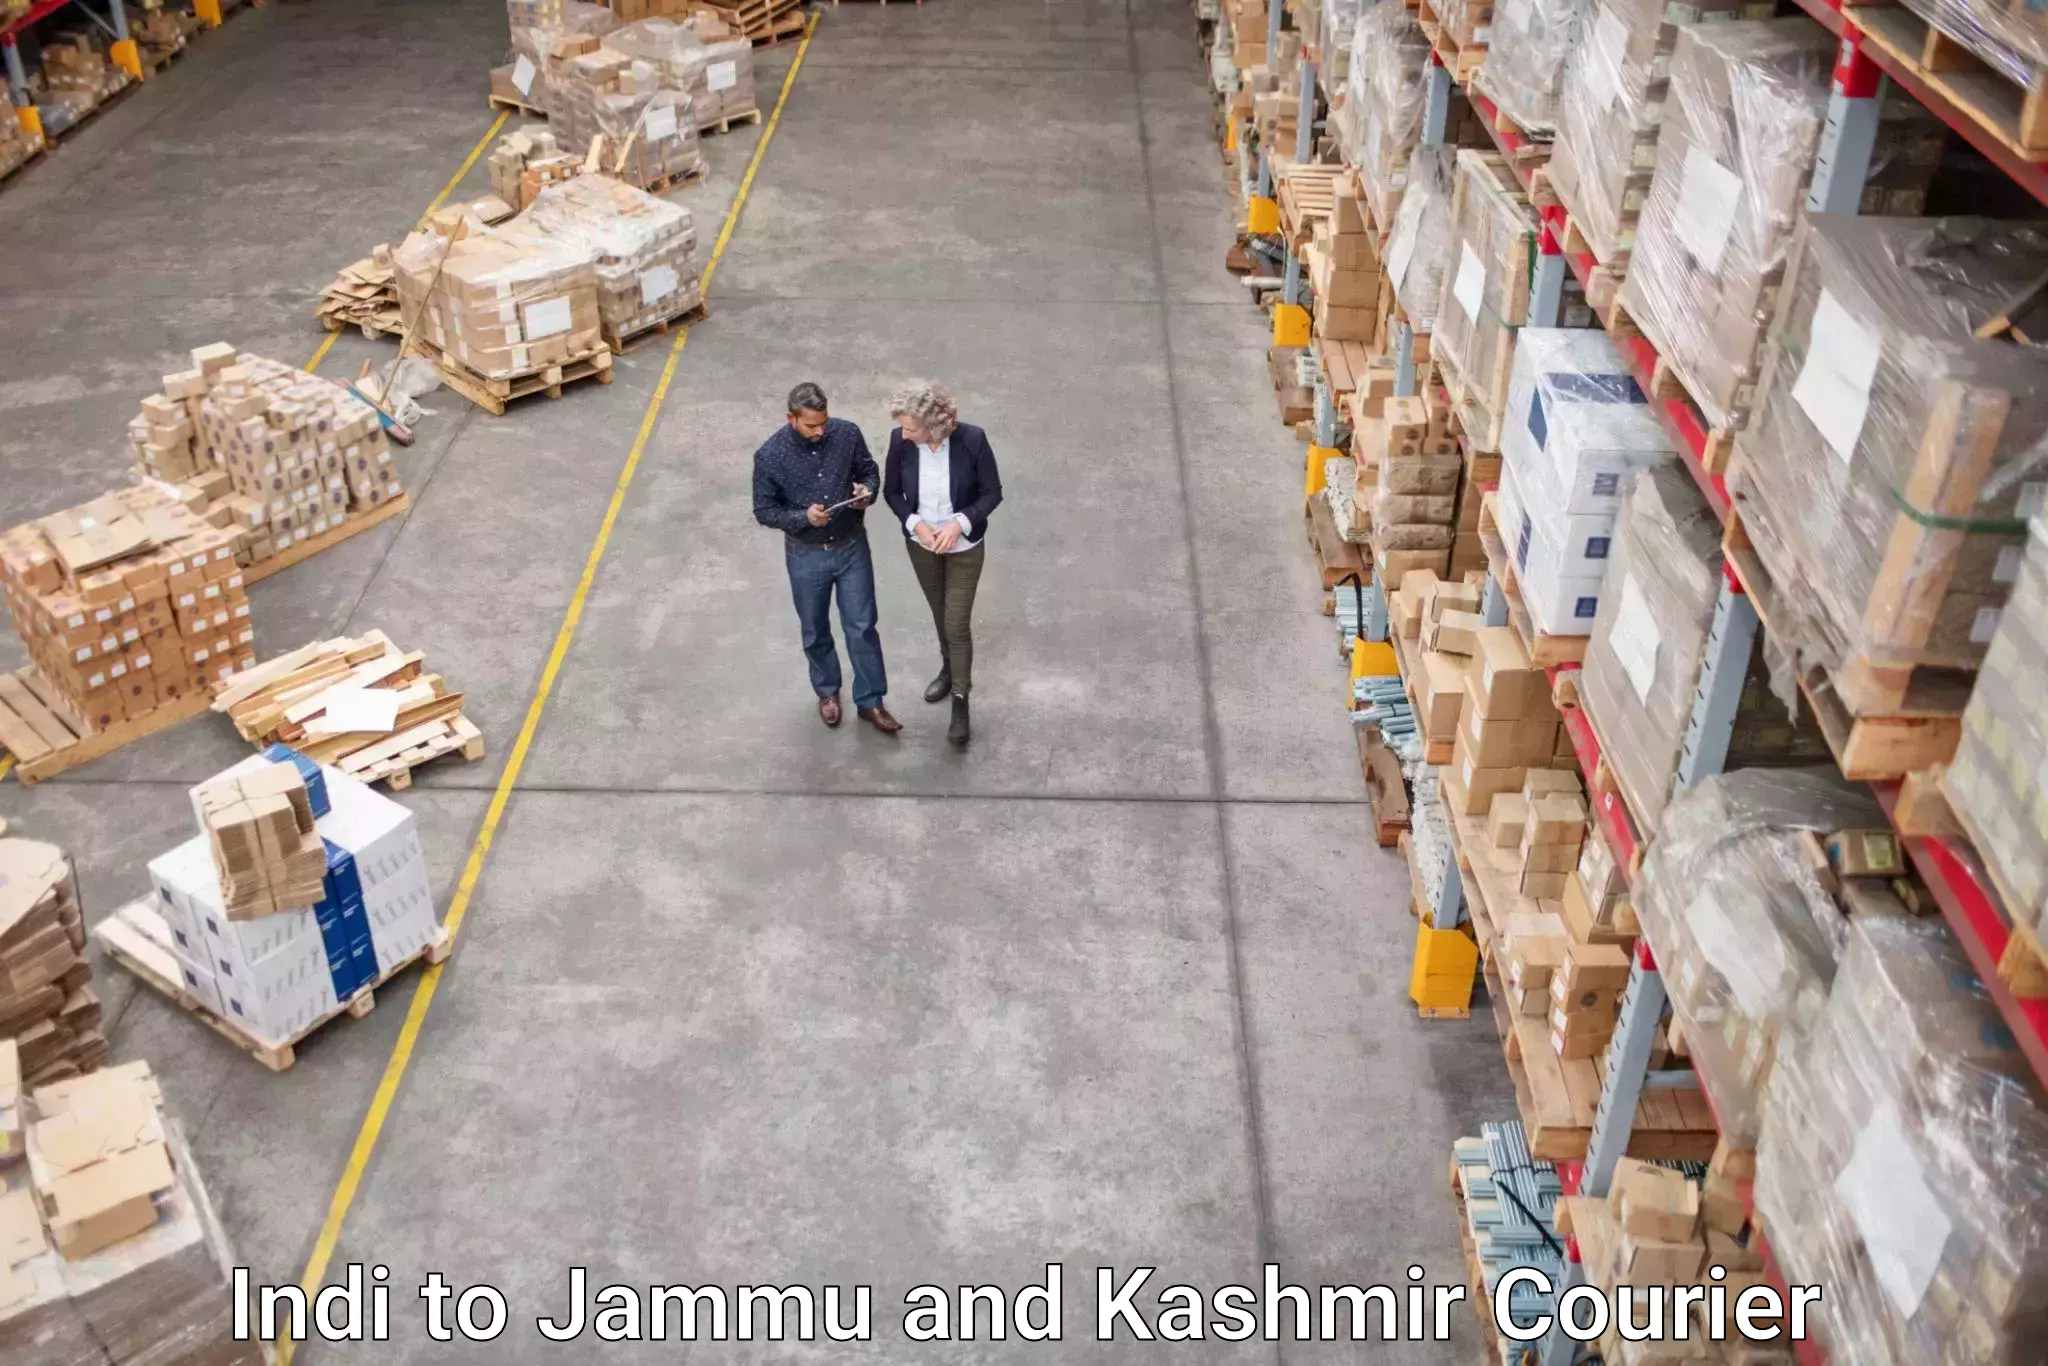 Courier service partnerships Indi to Kulgam